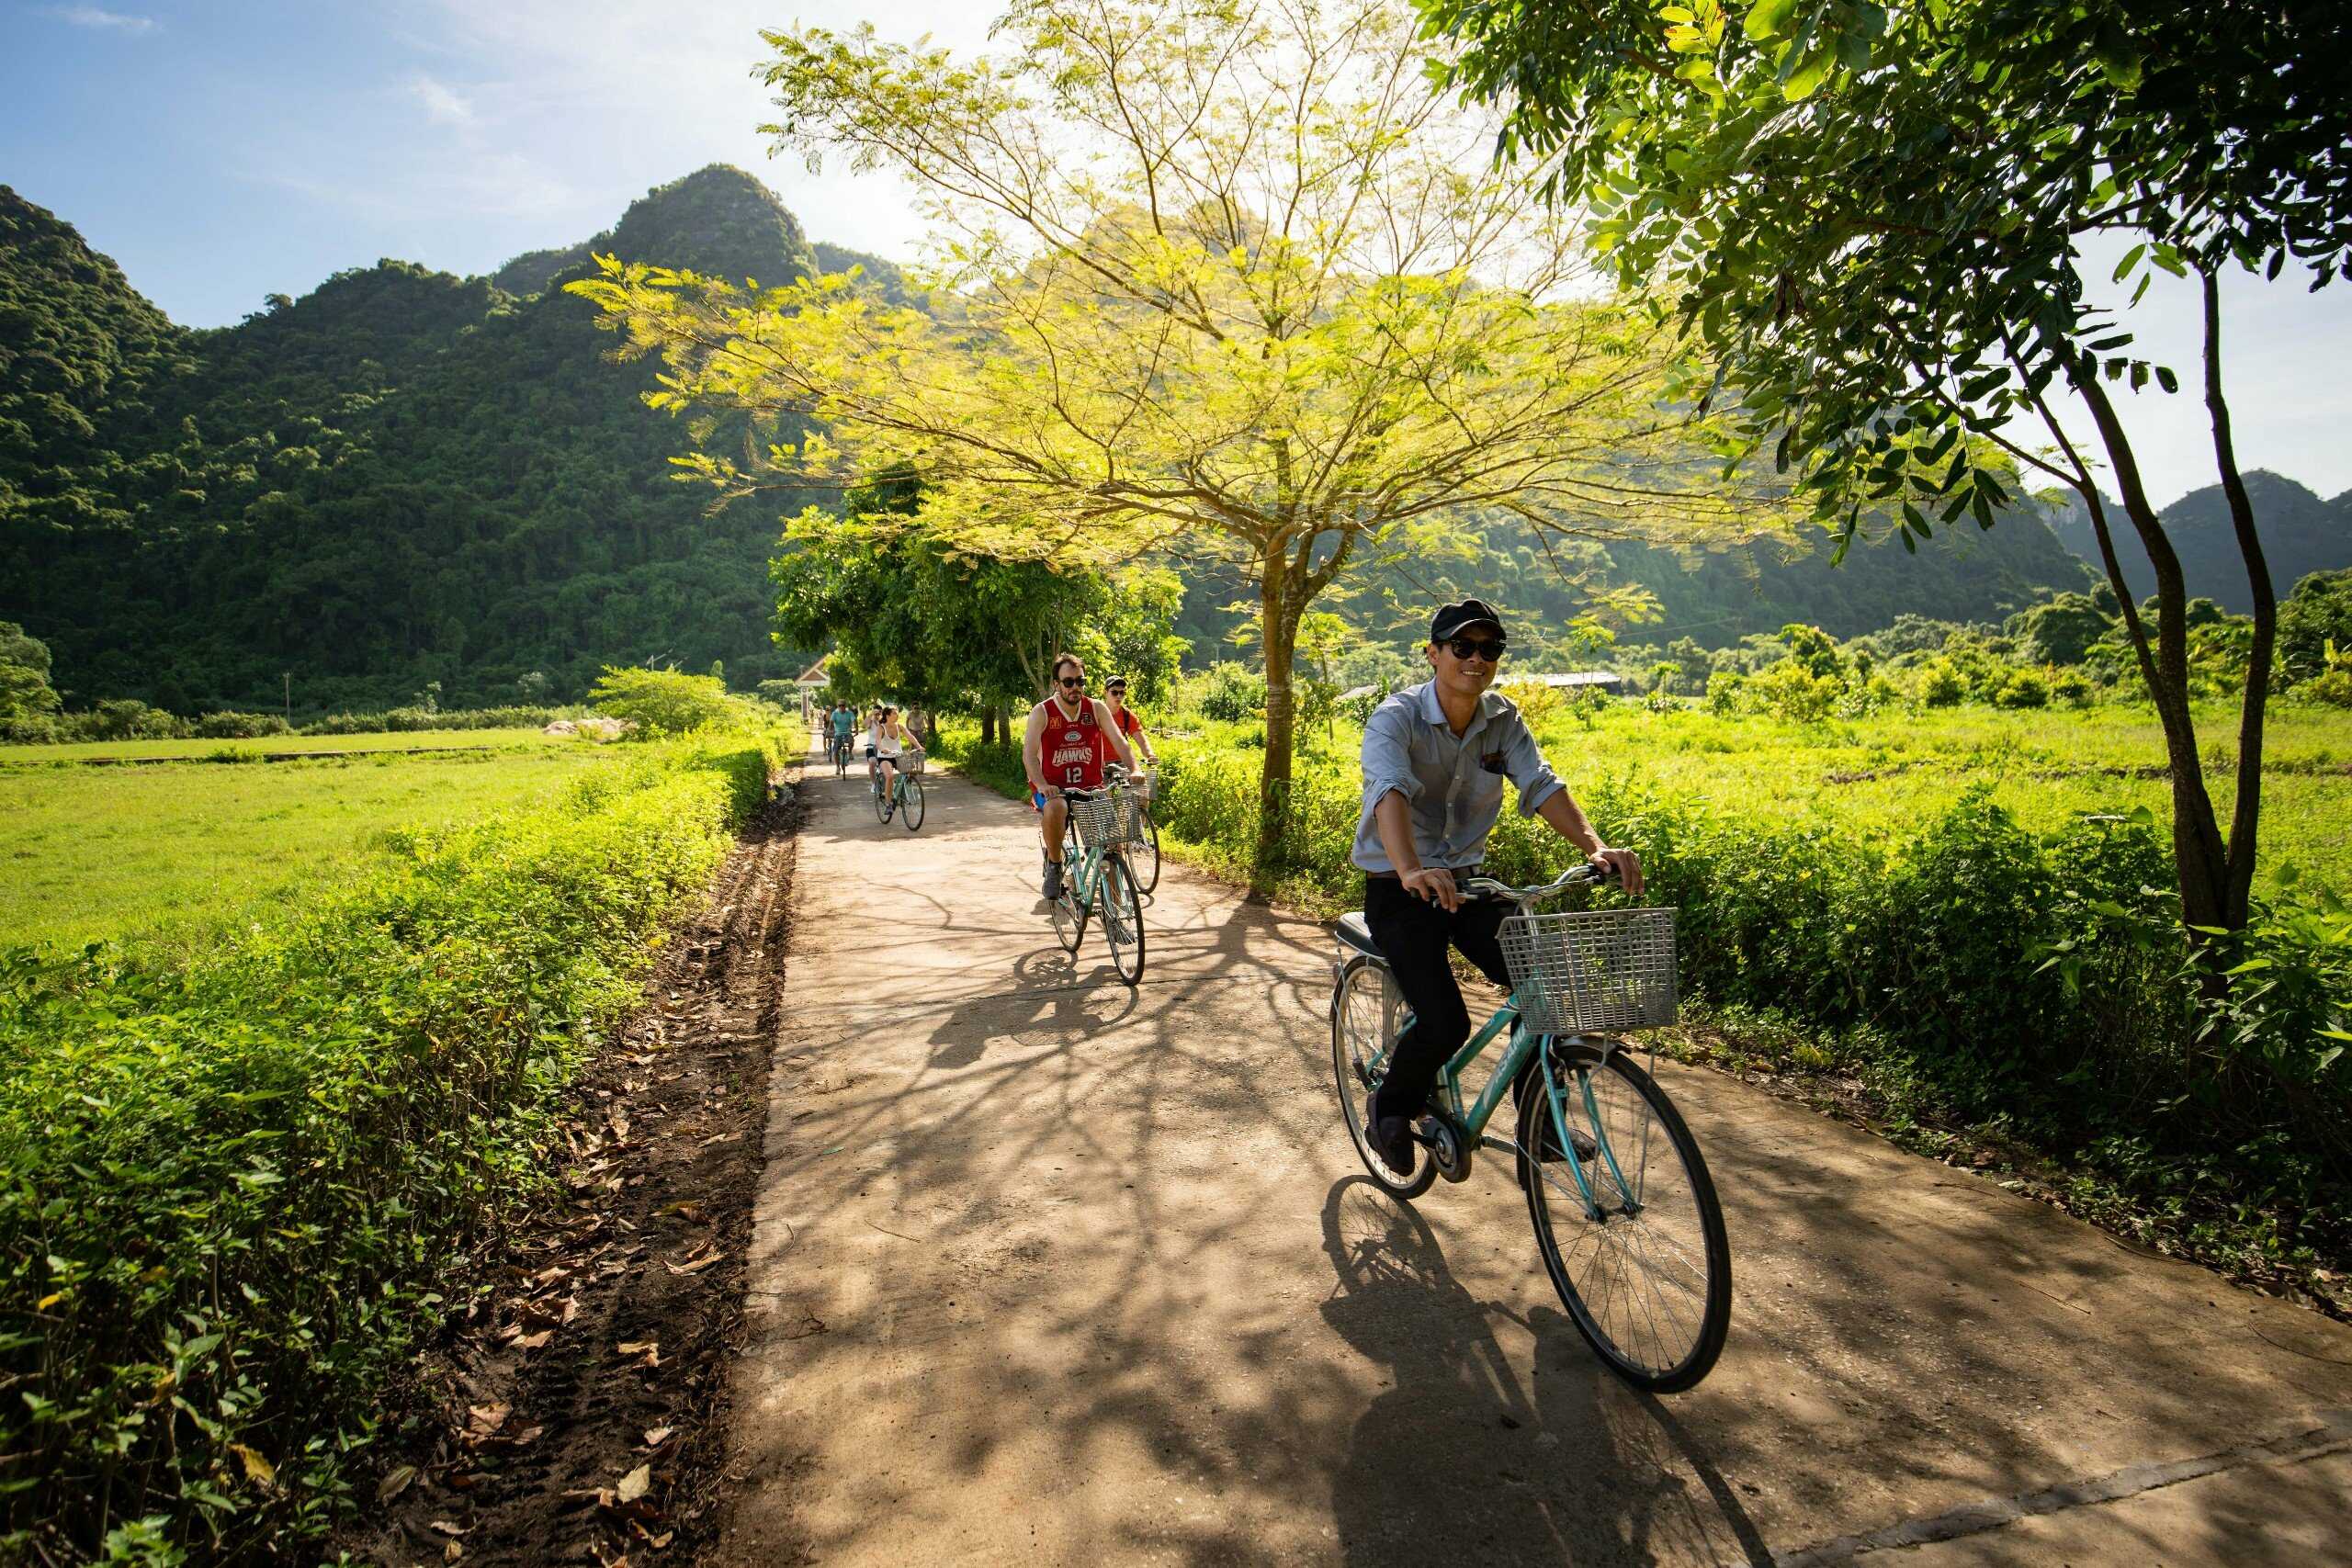 biking-to-explore-viet-hai-village